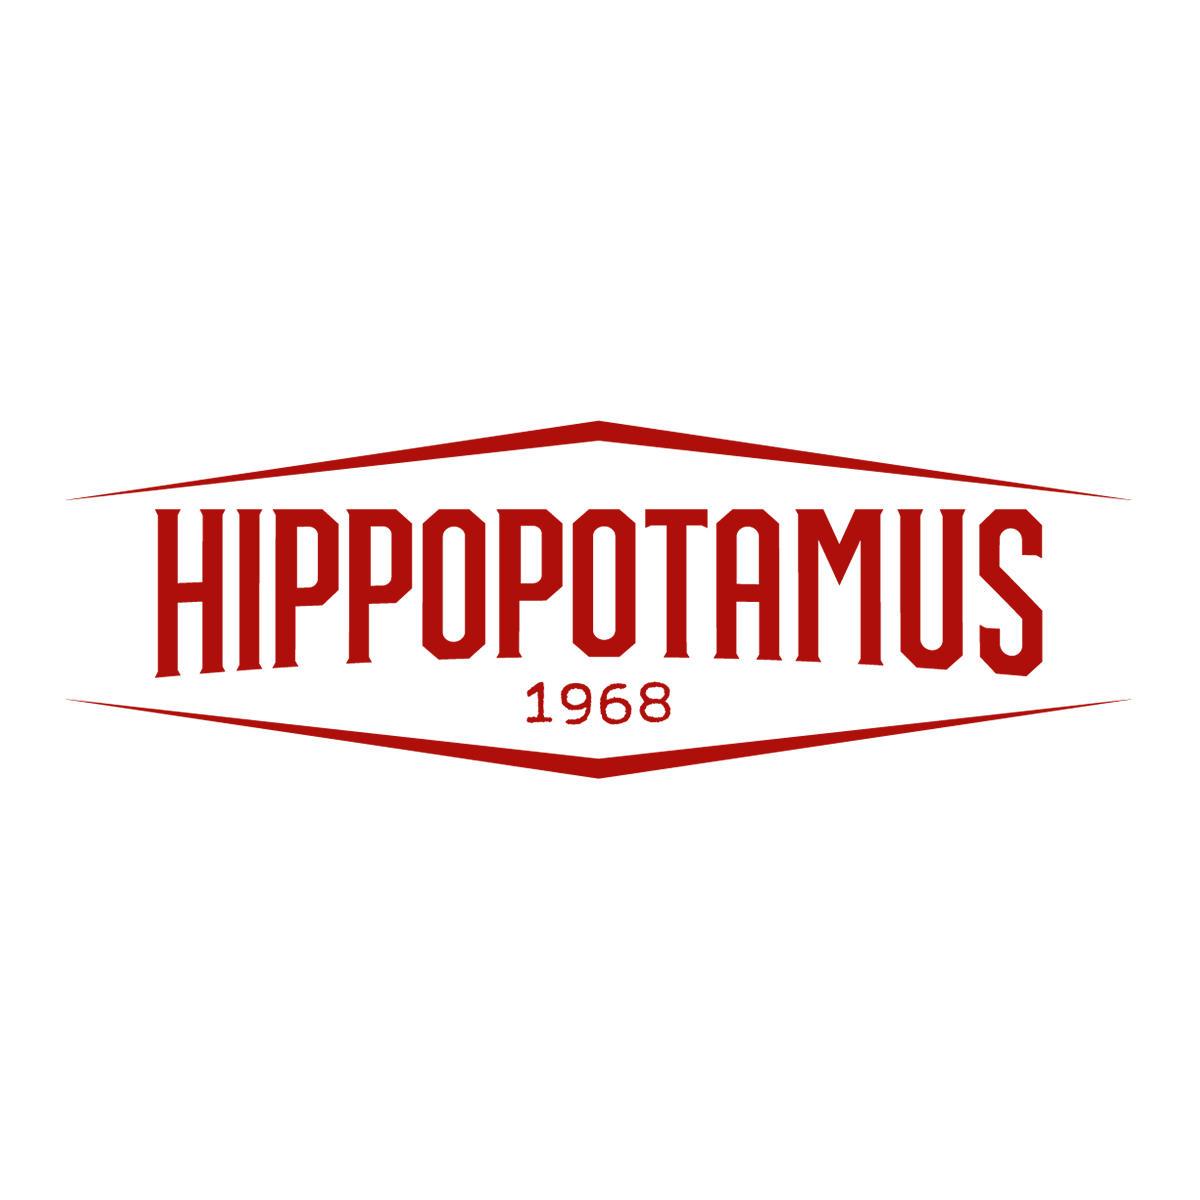 Hippopotamus Steakhouse Marseille